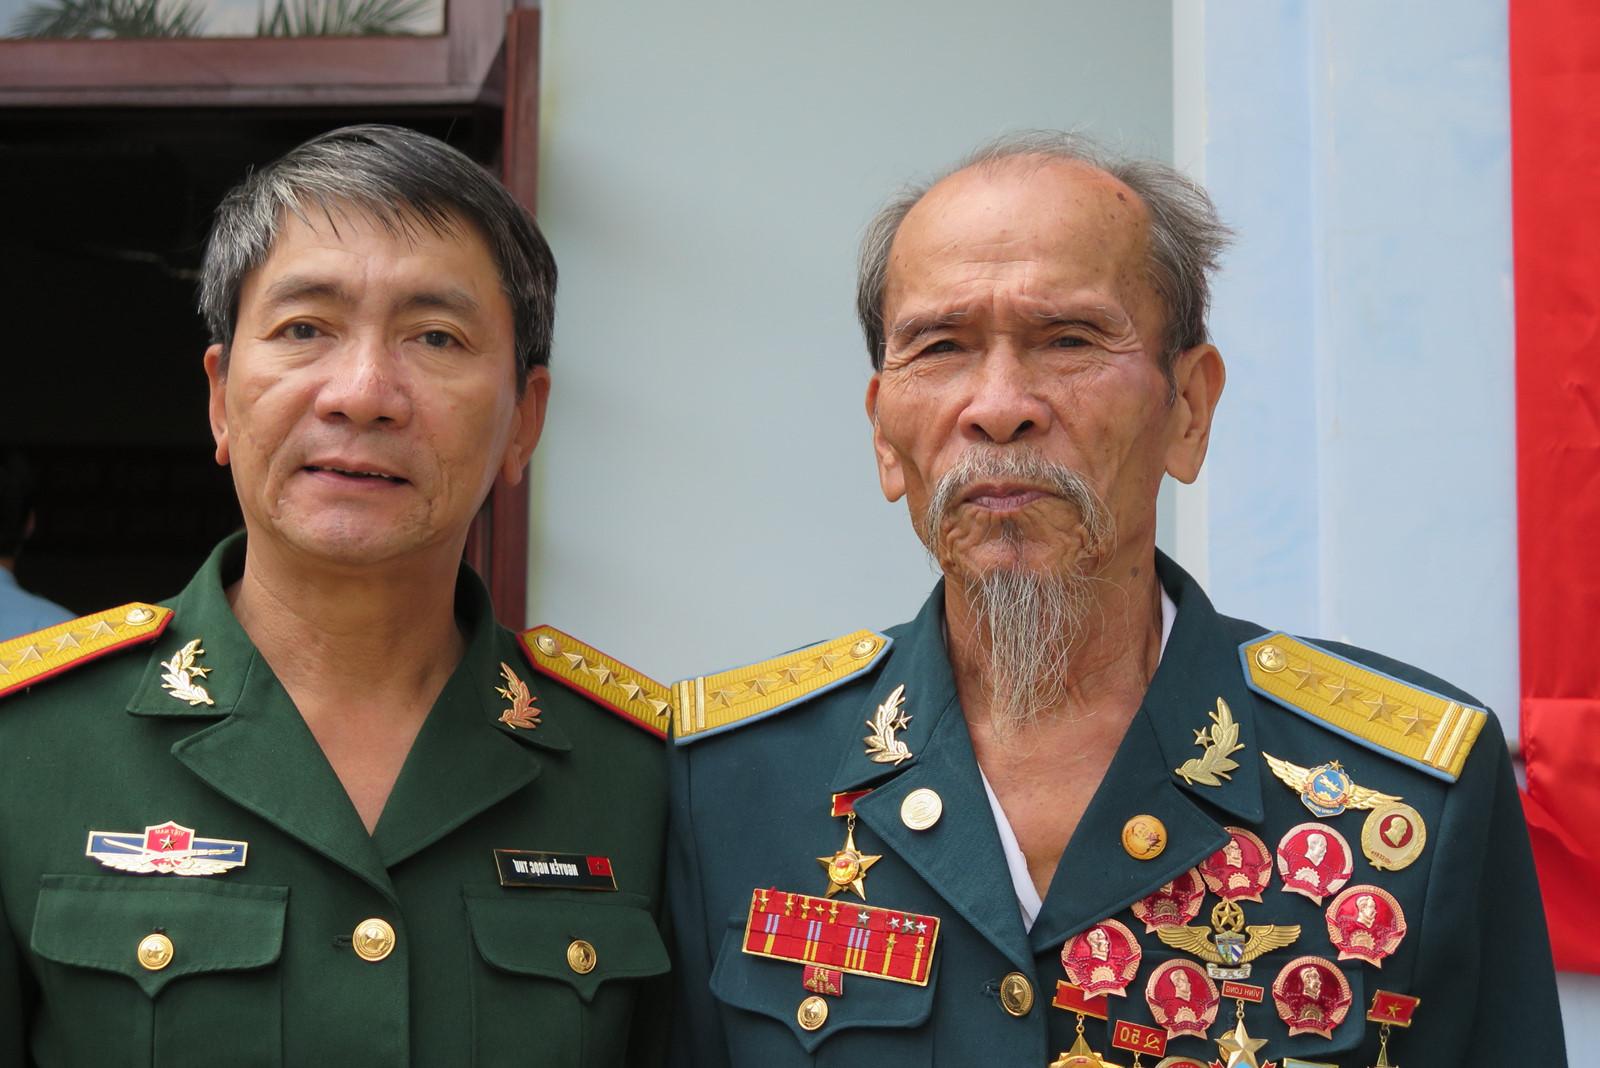 Đại tá Nguyễn Văn Bảy trong cuộc hội ngộ cùng đồng đội